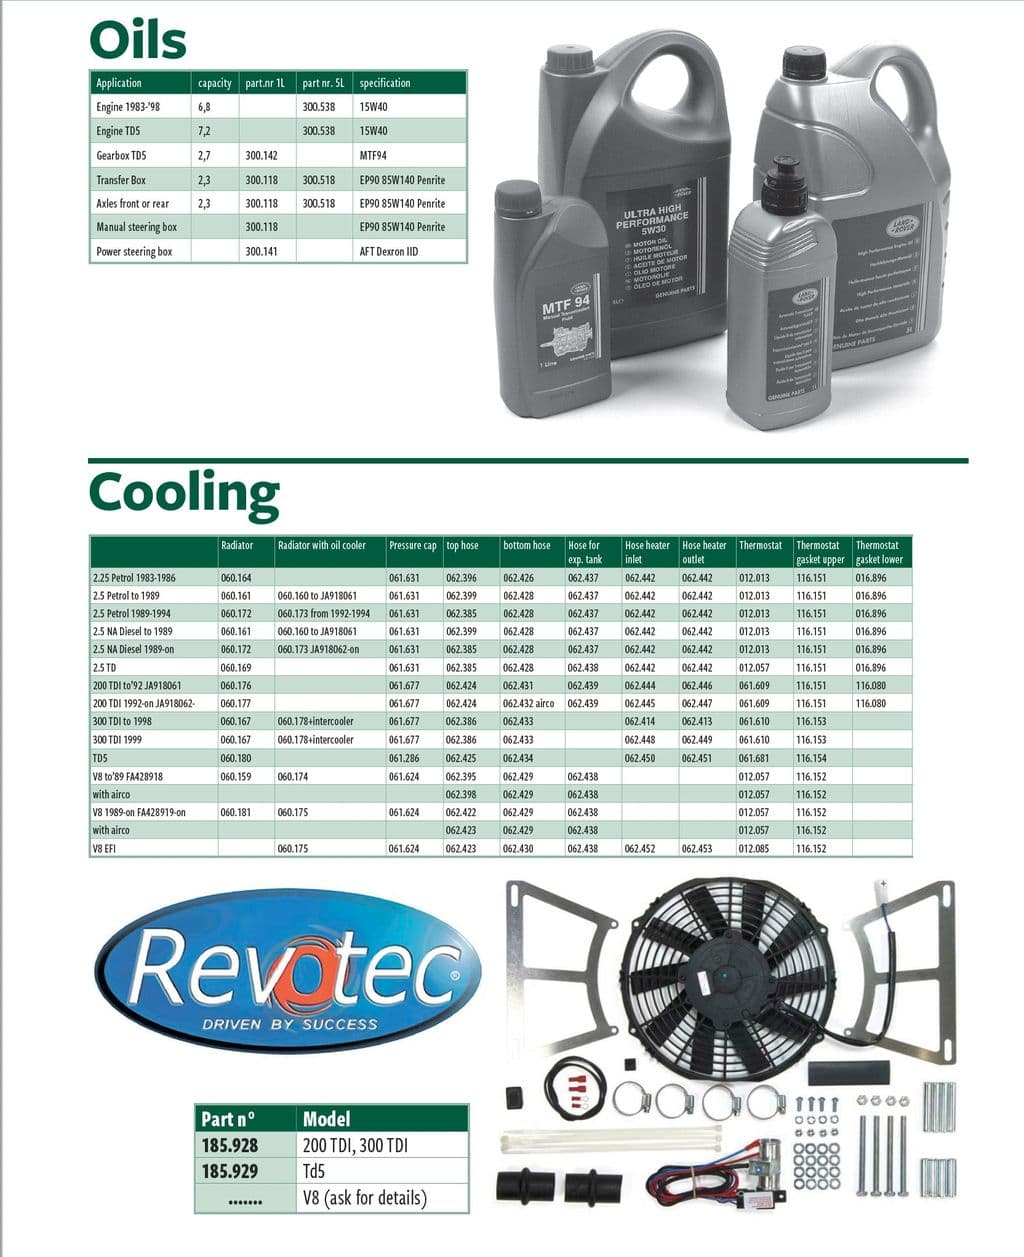 Oils & cooling - Engine cooling upgrade - Engine cooling - Land Rover Defender 90-110 1984-2006 - Oils & cooling - 1